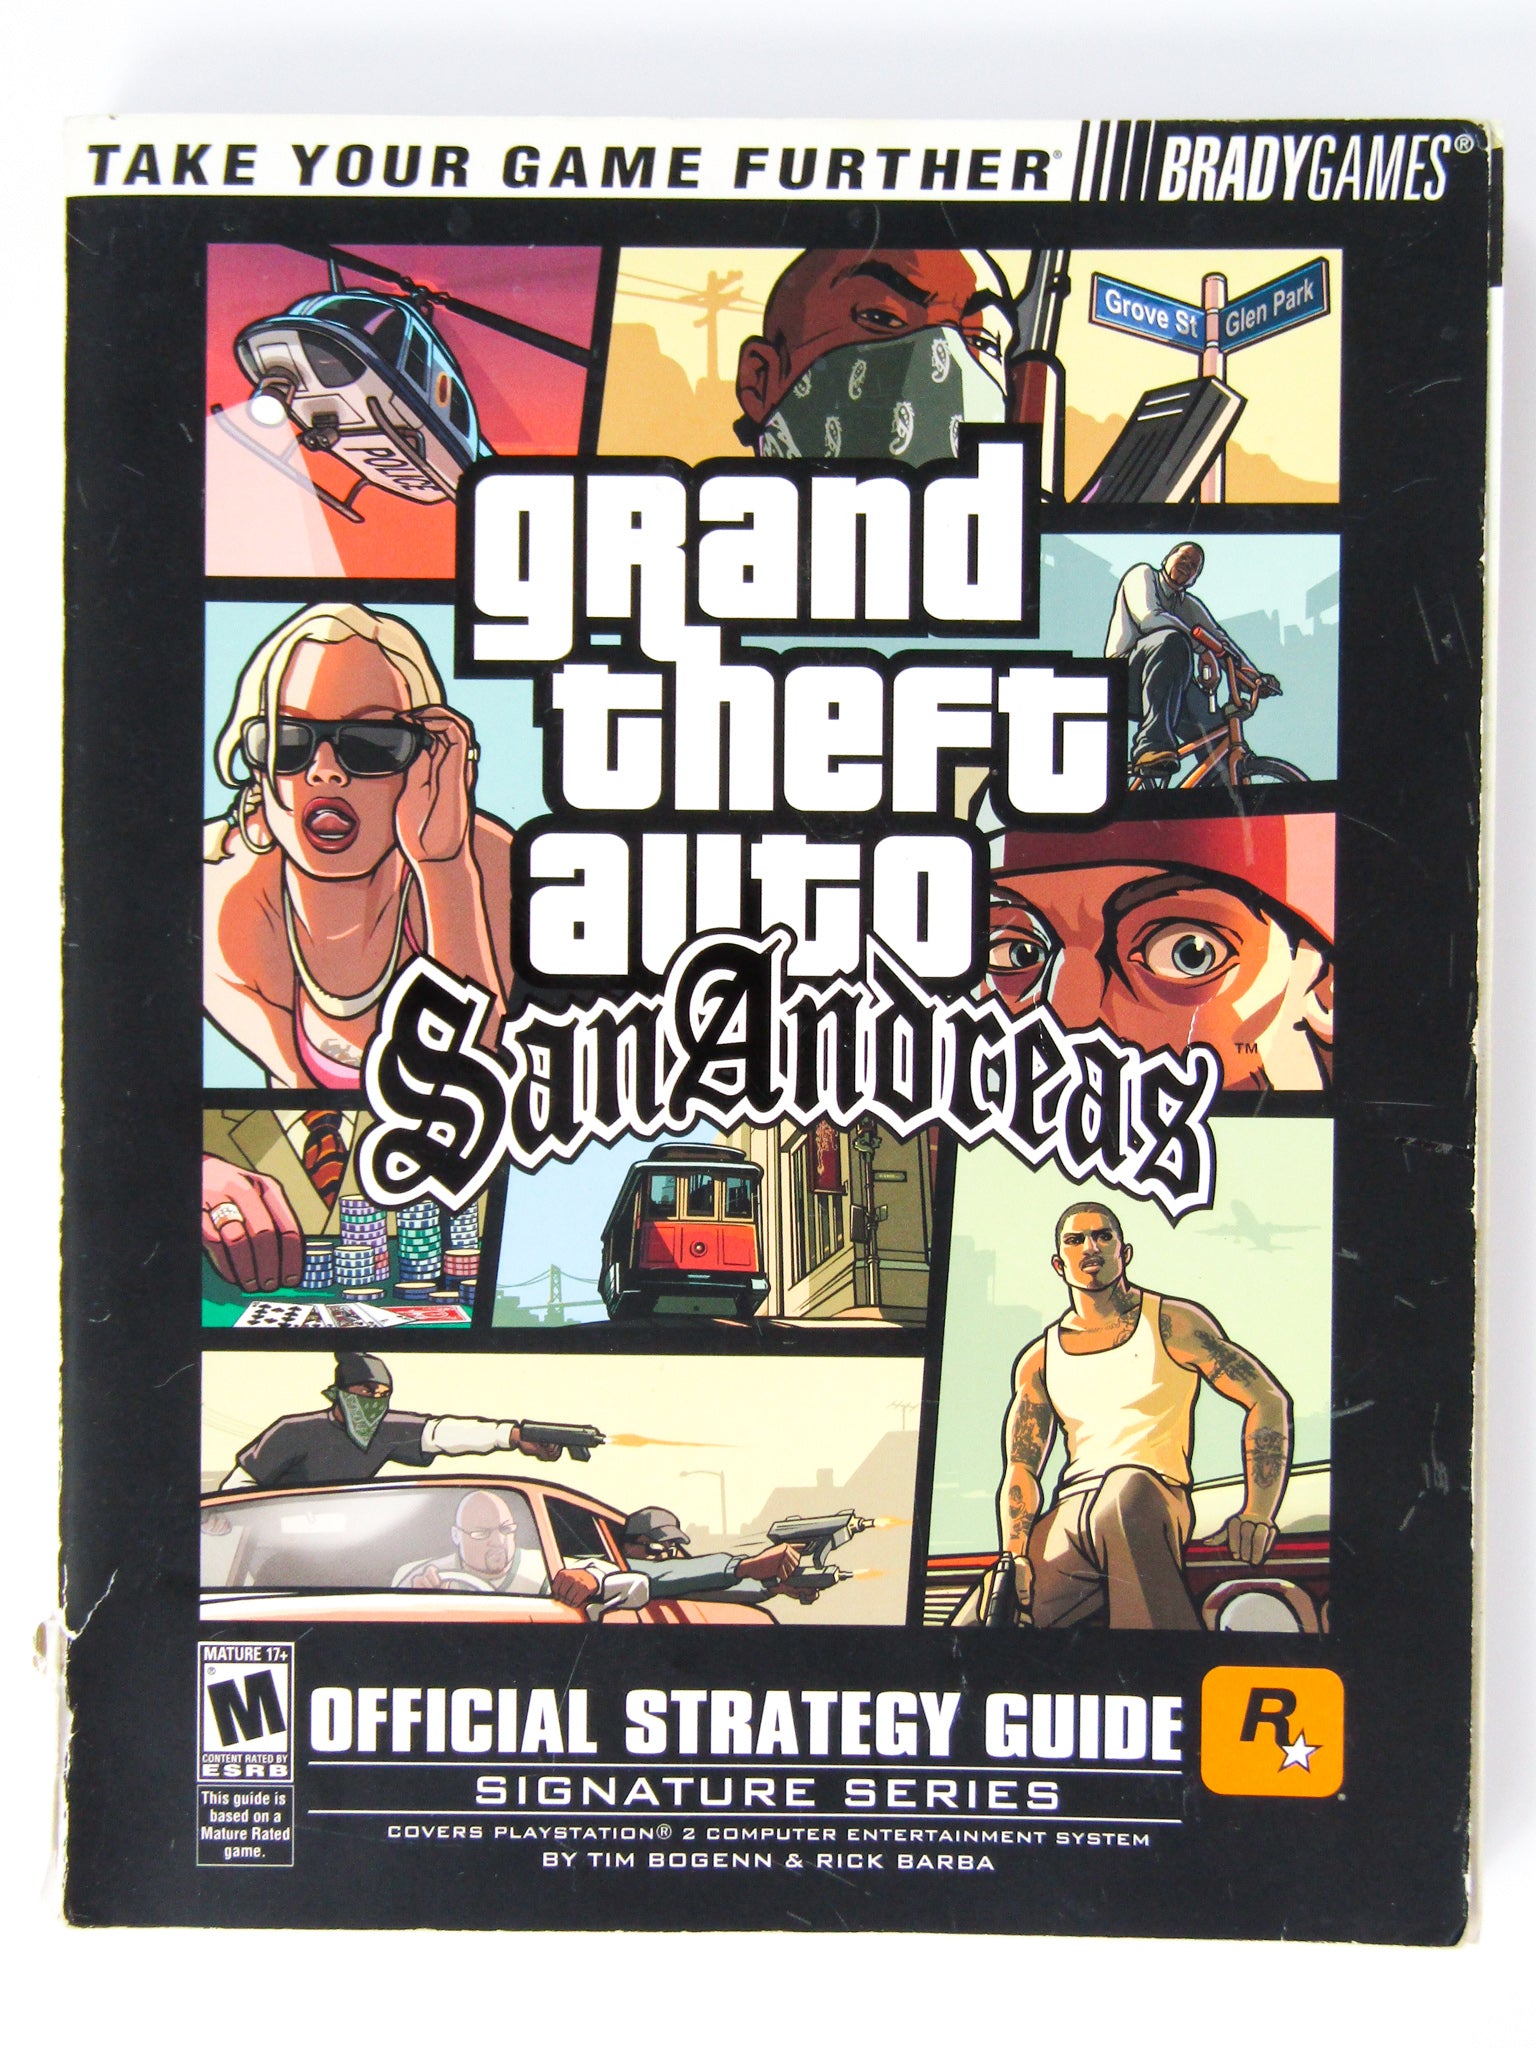 GTA San Andreas Cheat! #ps2 #ps2games #ps2gamer #gta #gtasanandreas #g